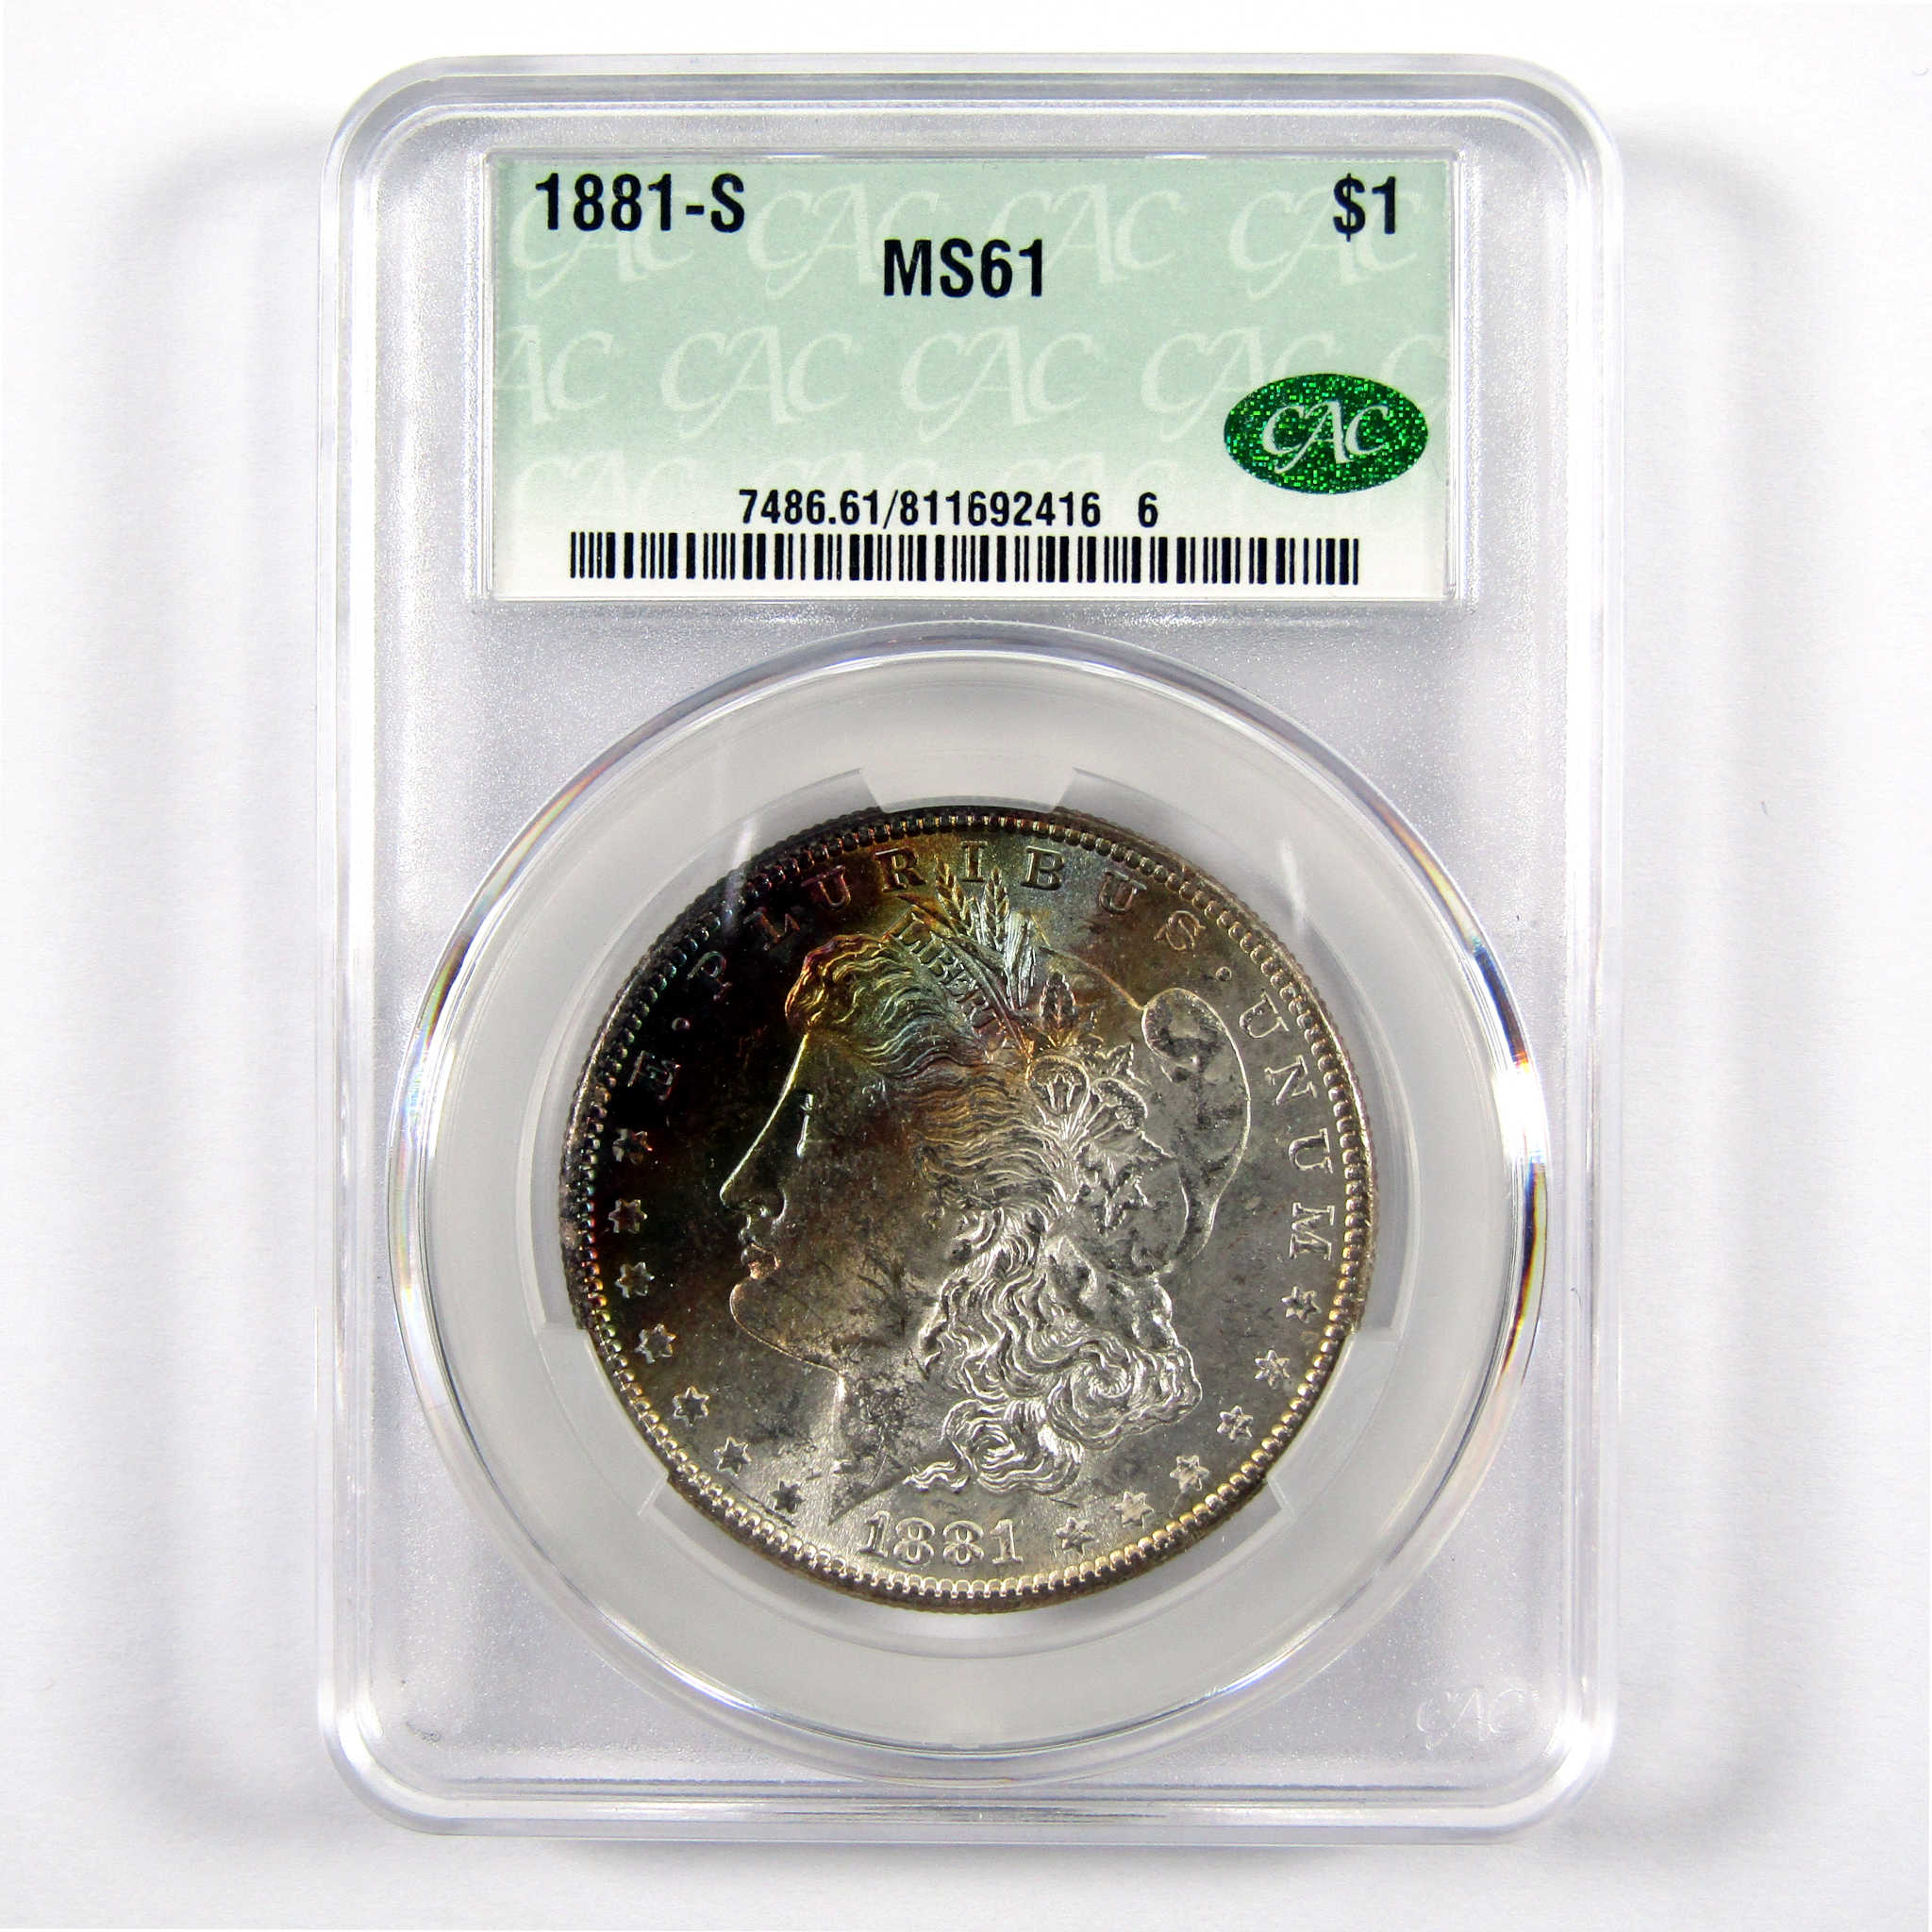 1881 S Morgan Dollar MS 61 CAC 90% Silver $1 Unc Toned SKU:I10490